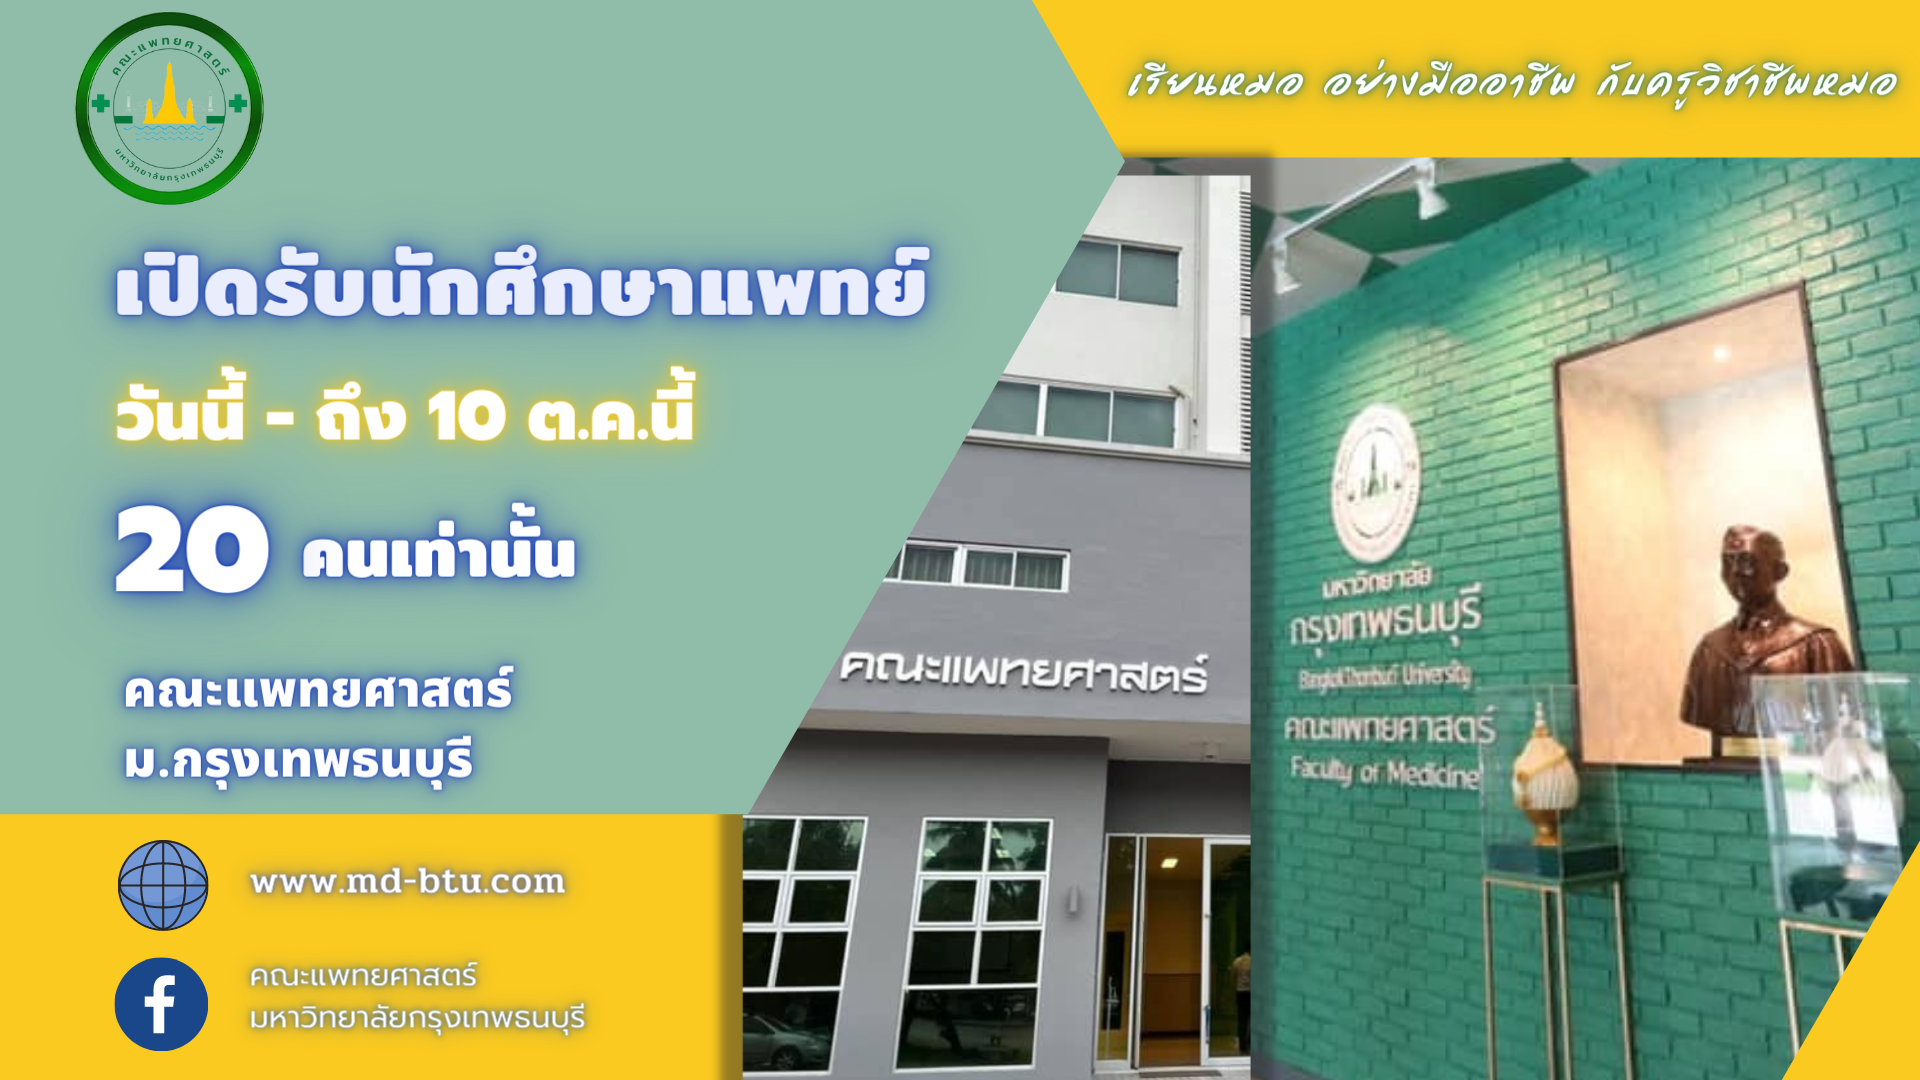 โค้งสุดท้าย! คณะแพทยศาสตร์ มหาวิทยาลัยกรุงเทพธนบุรี เปิดรับสมัครนักศึกษา เริ่มวันนี้ – 10 ต.ค. 2564